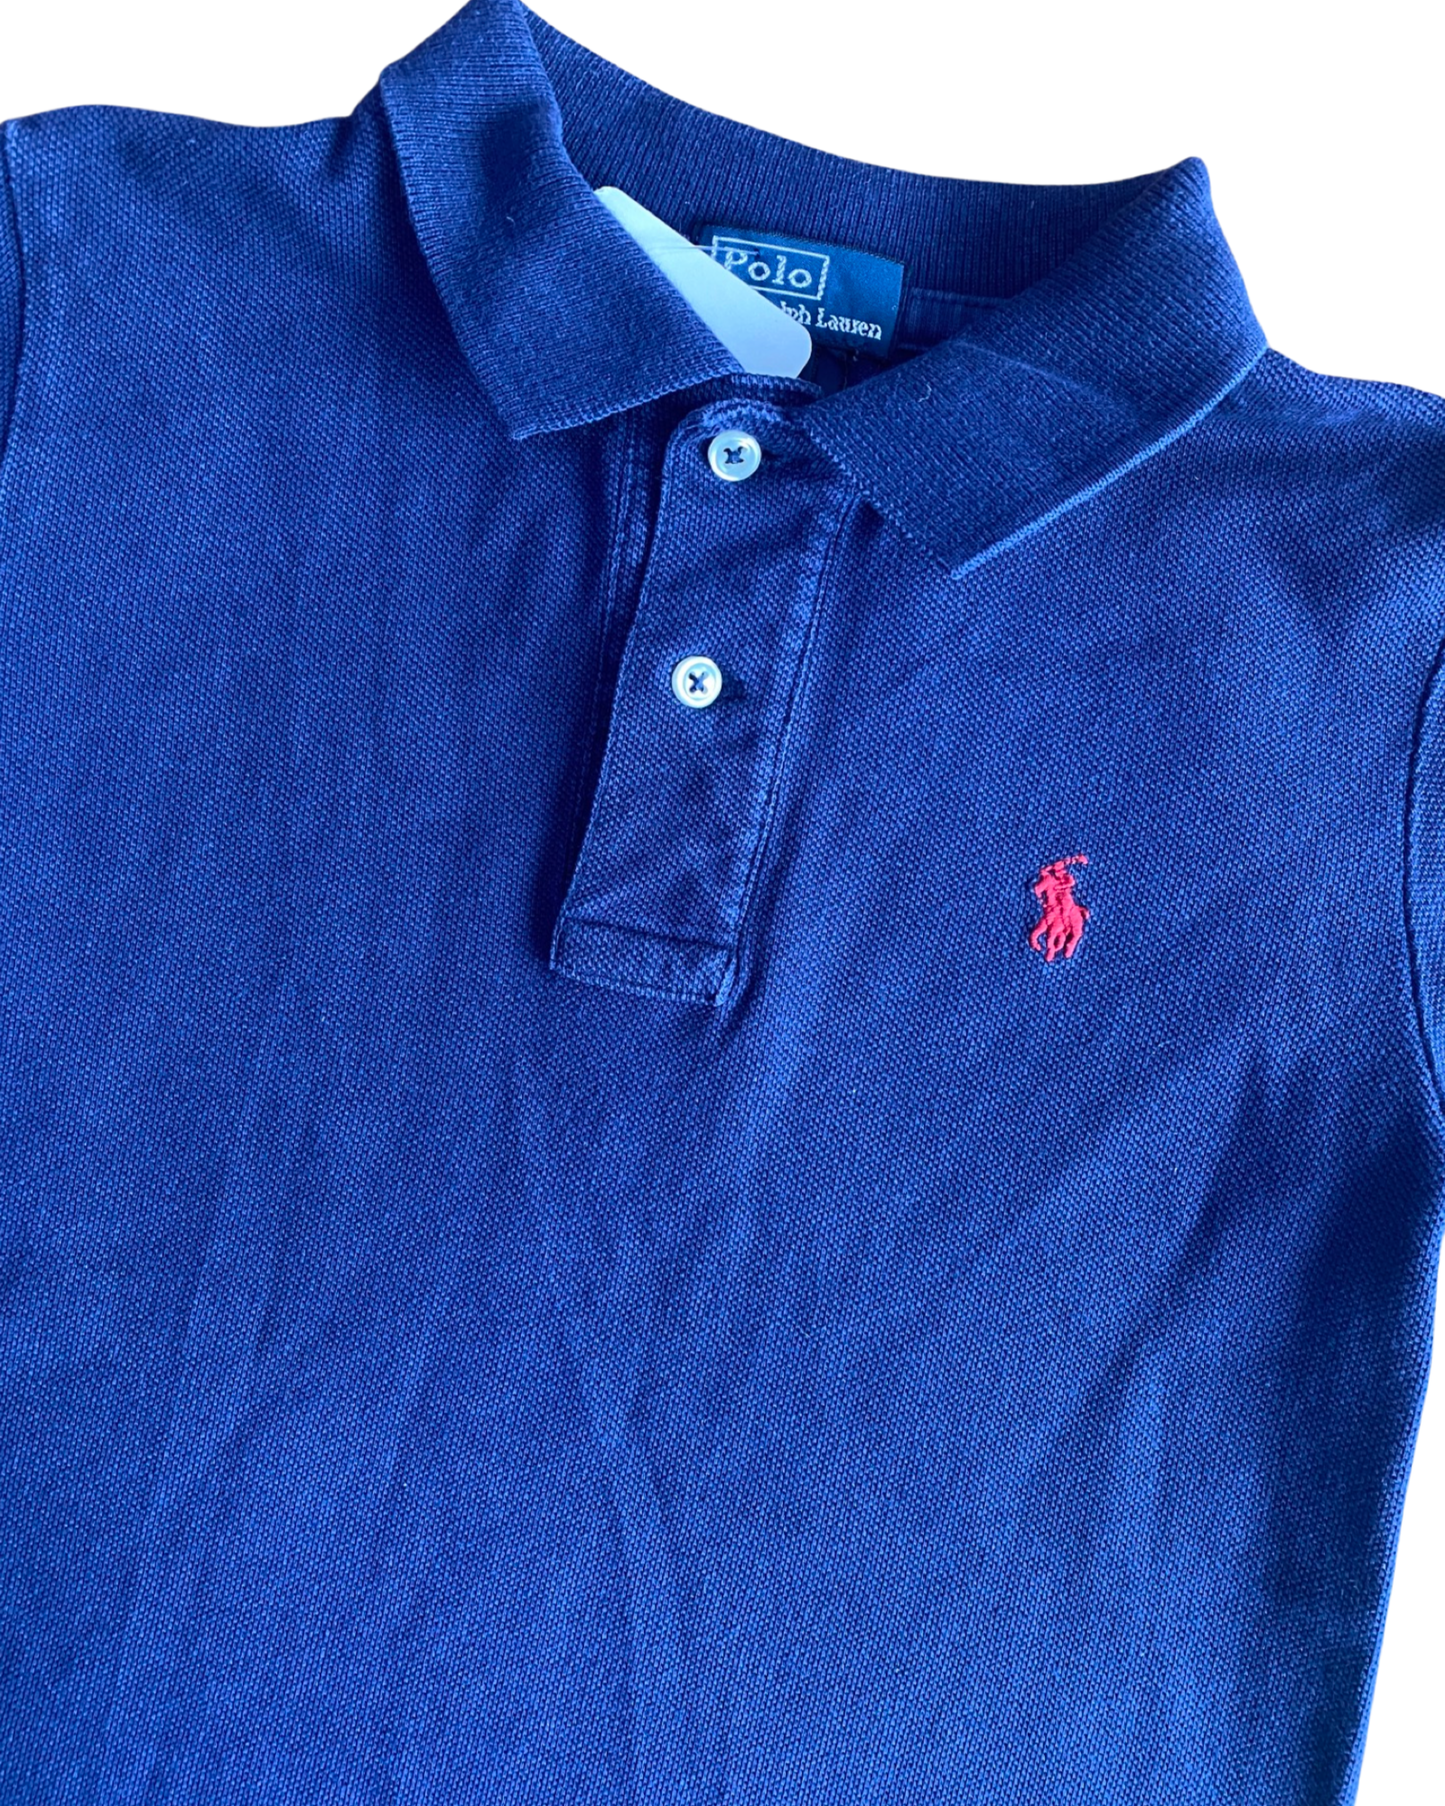 Ralph Lauren navy polo shirt (3-4yrs)